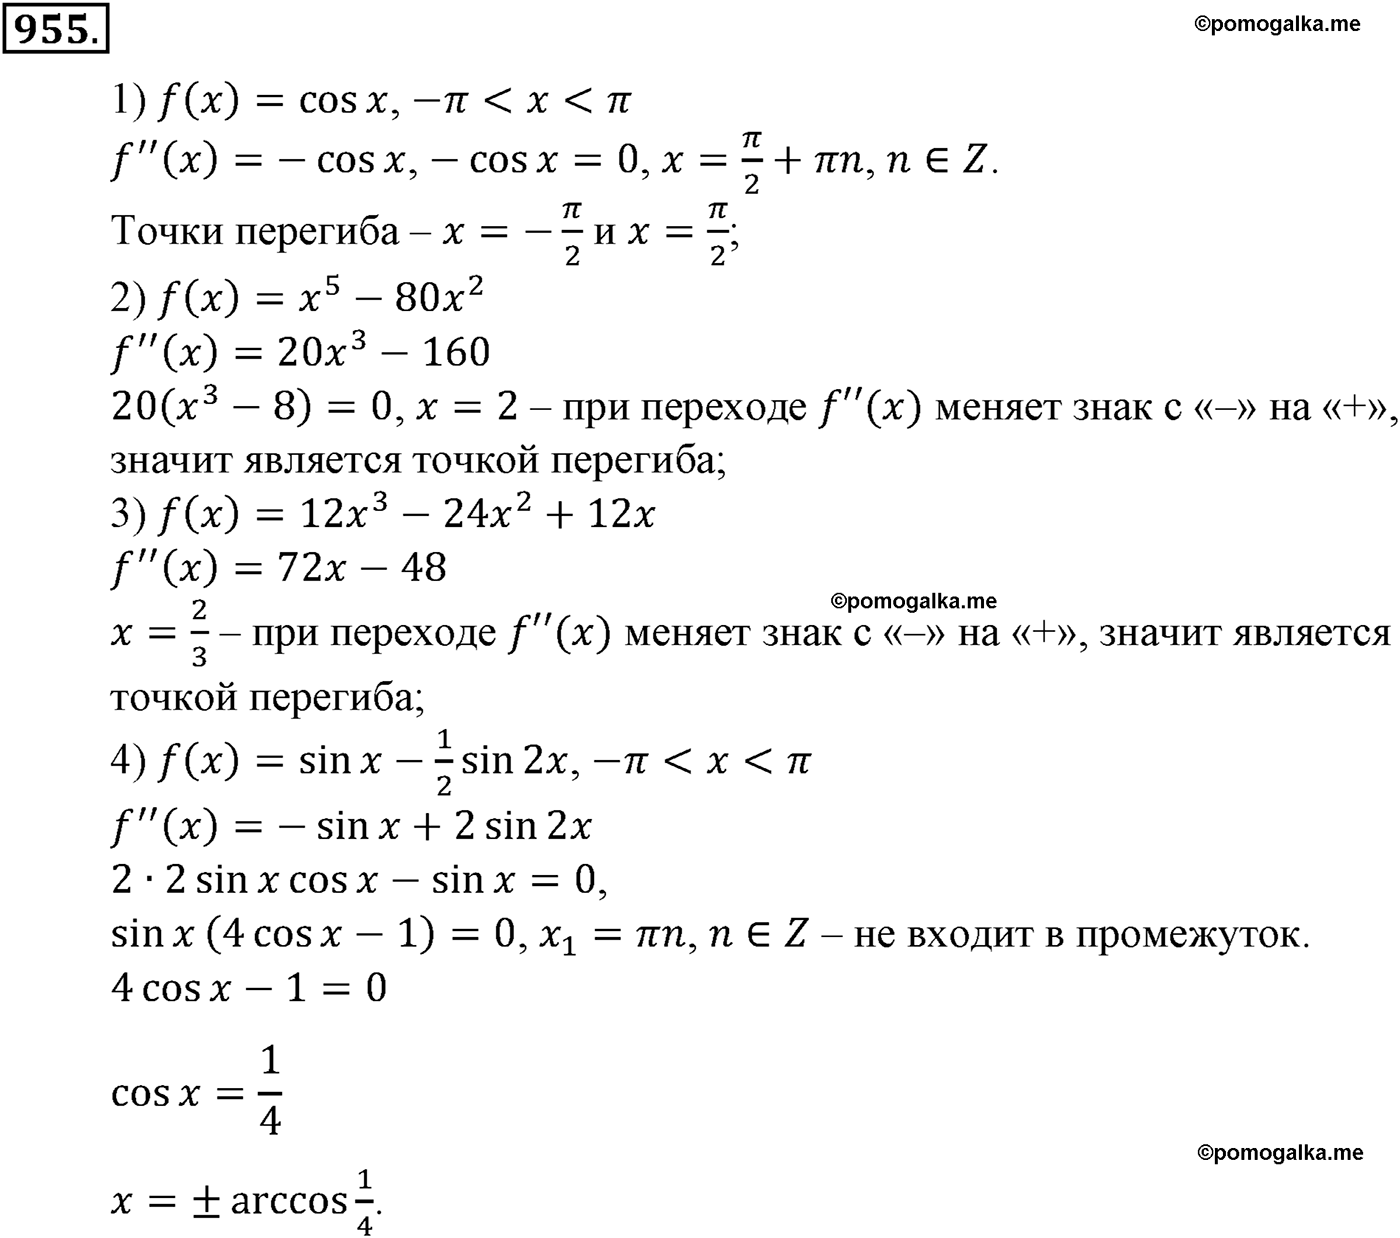 разбор задачи №955 по алгебре за 10-11 класс из учебника Алимова, Колягина